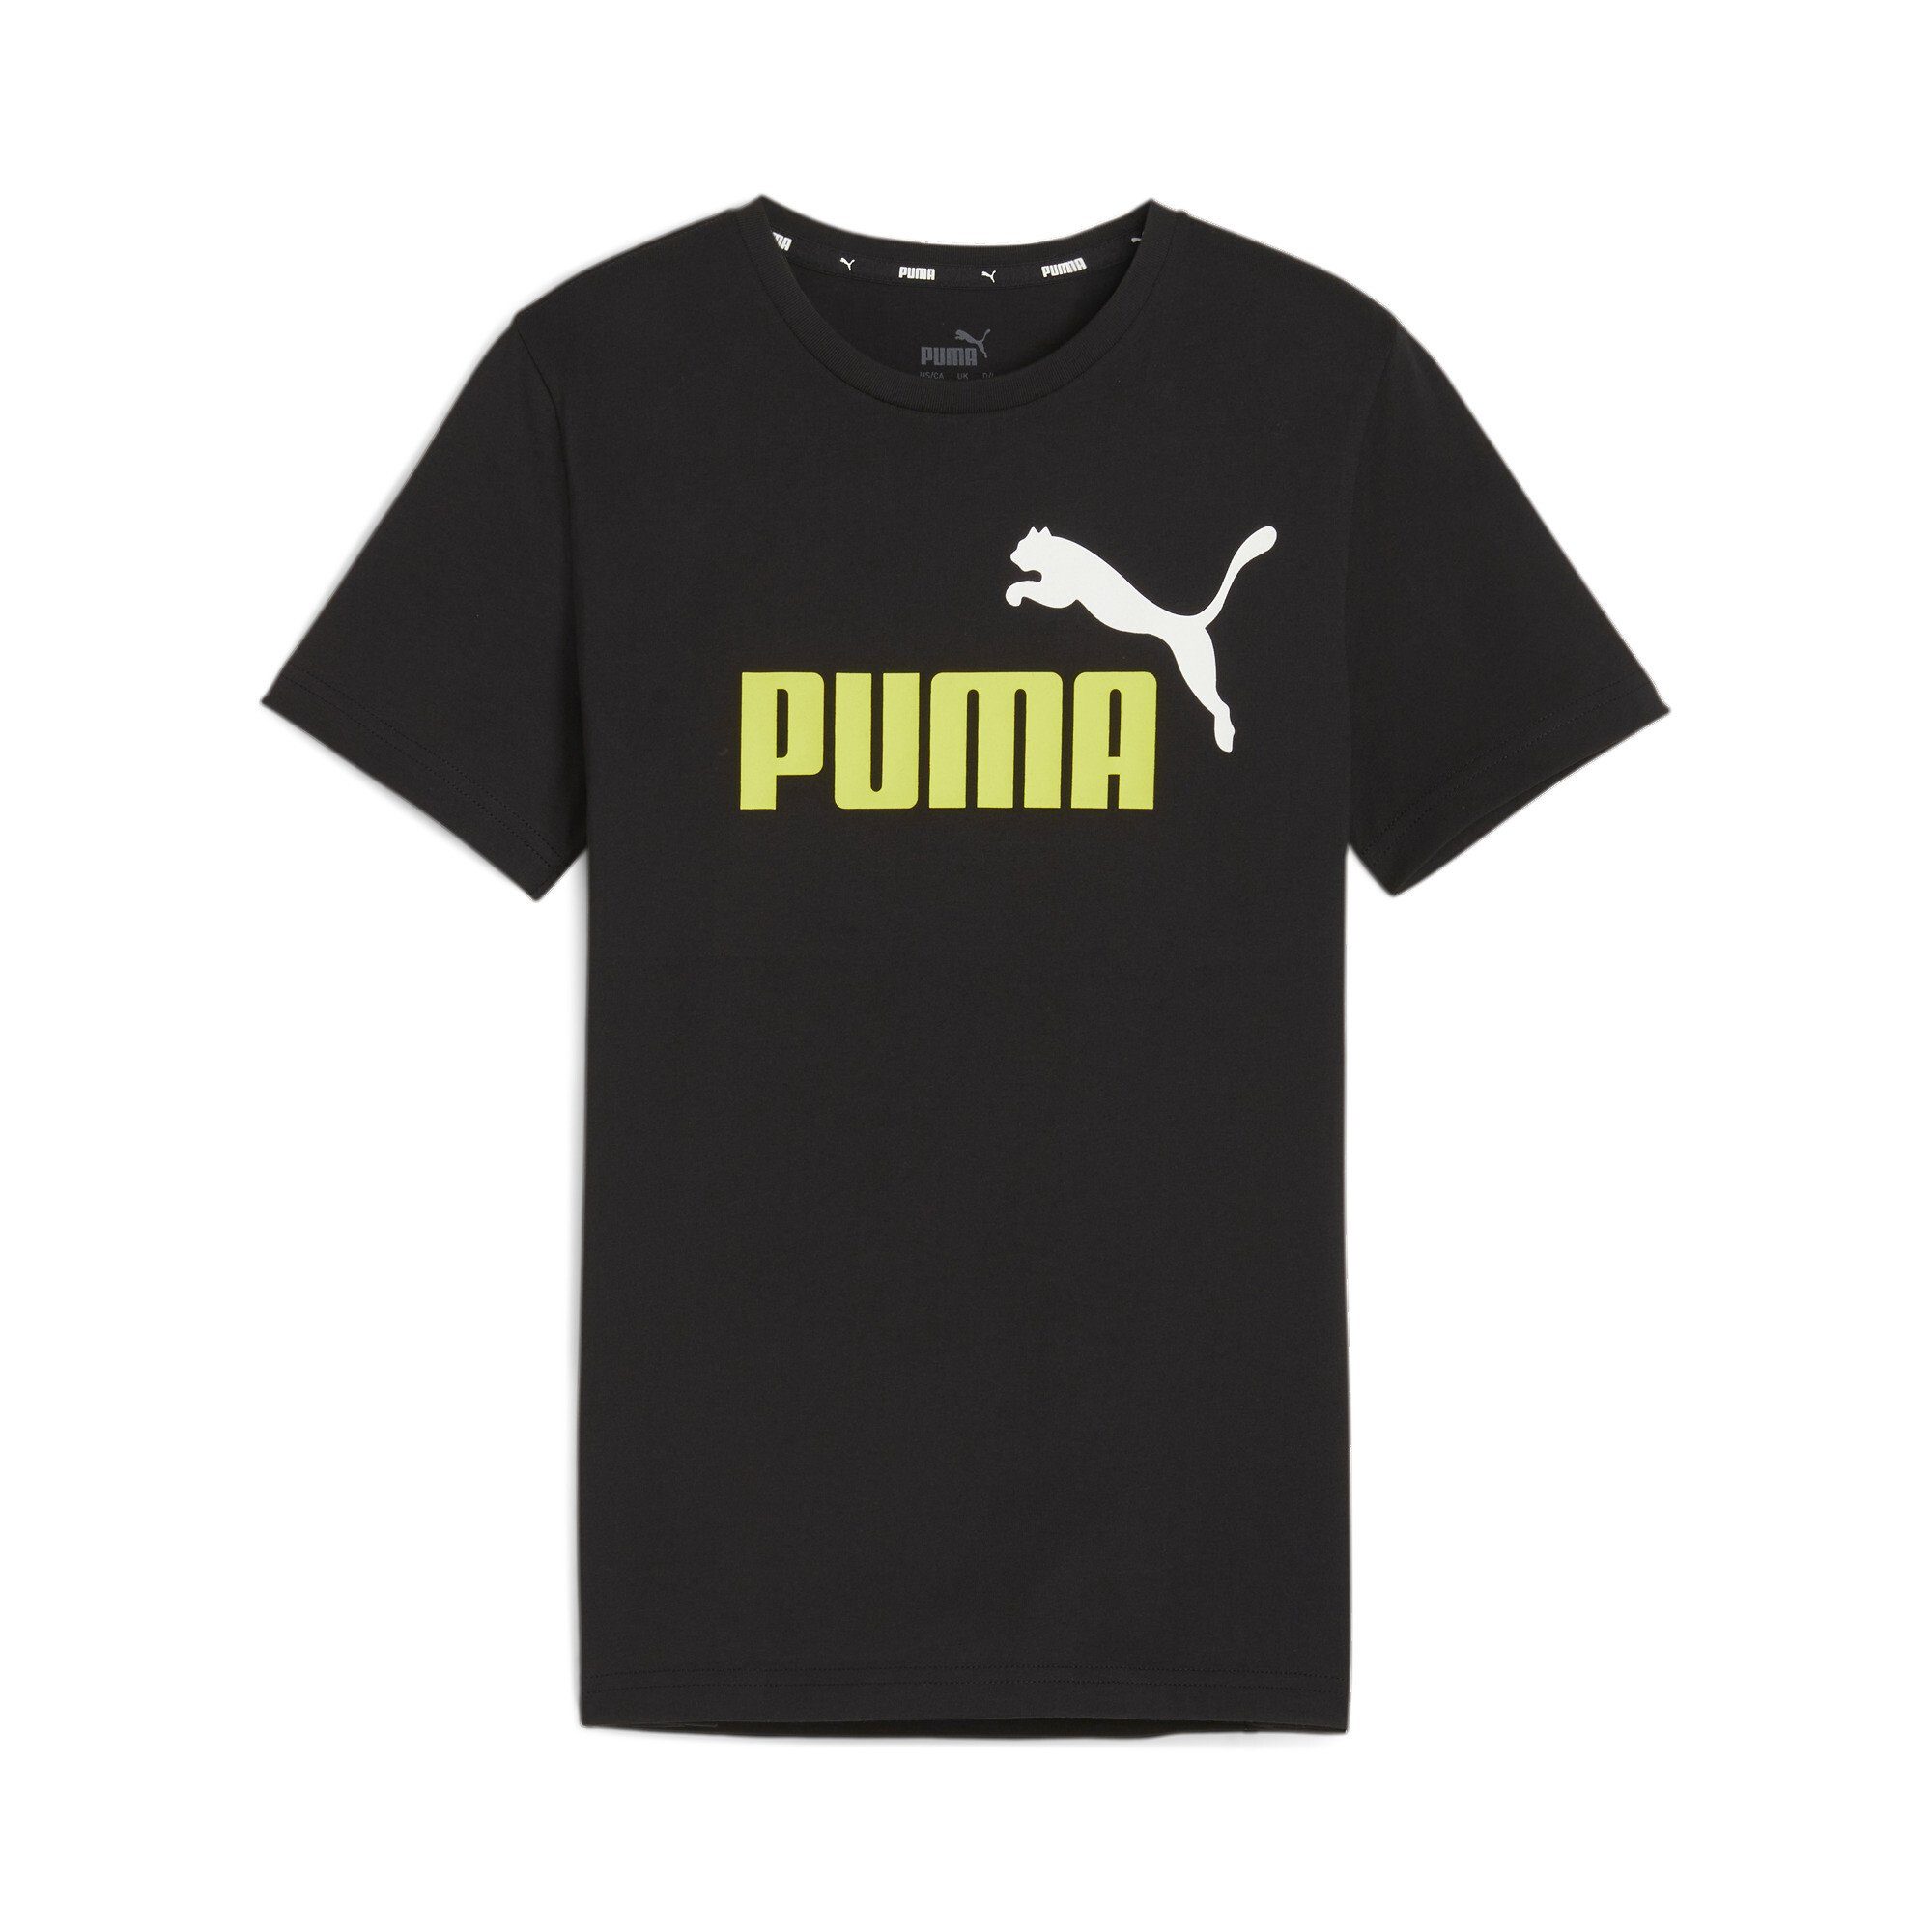 Puma T-shirt zwart geel Katoen Ronde hals Logo 128